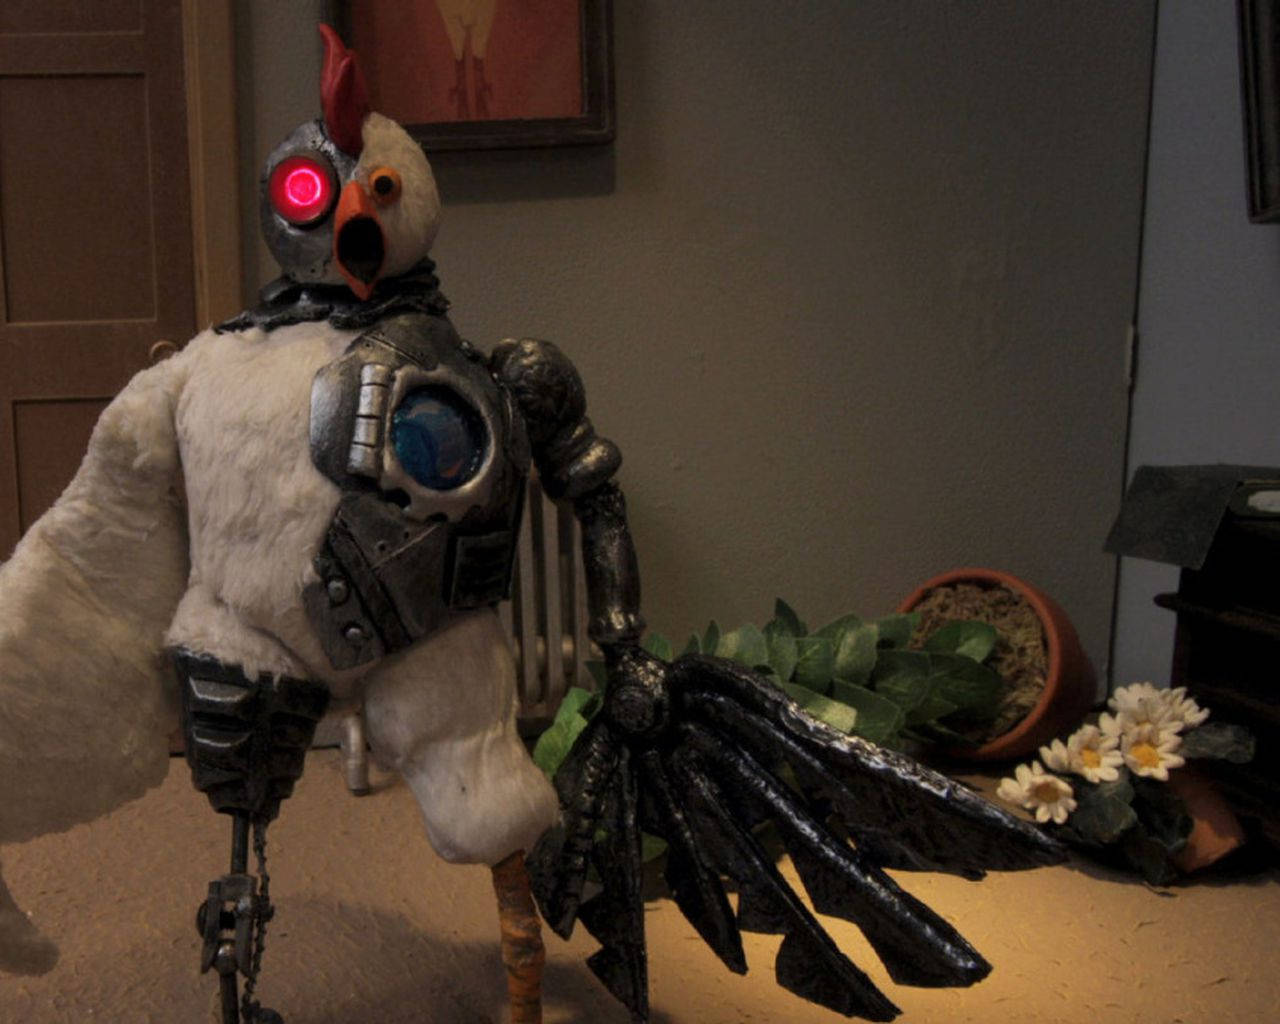 Devastated Robot Chicken